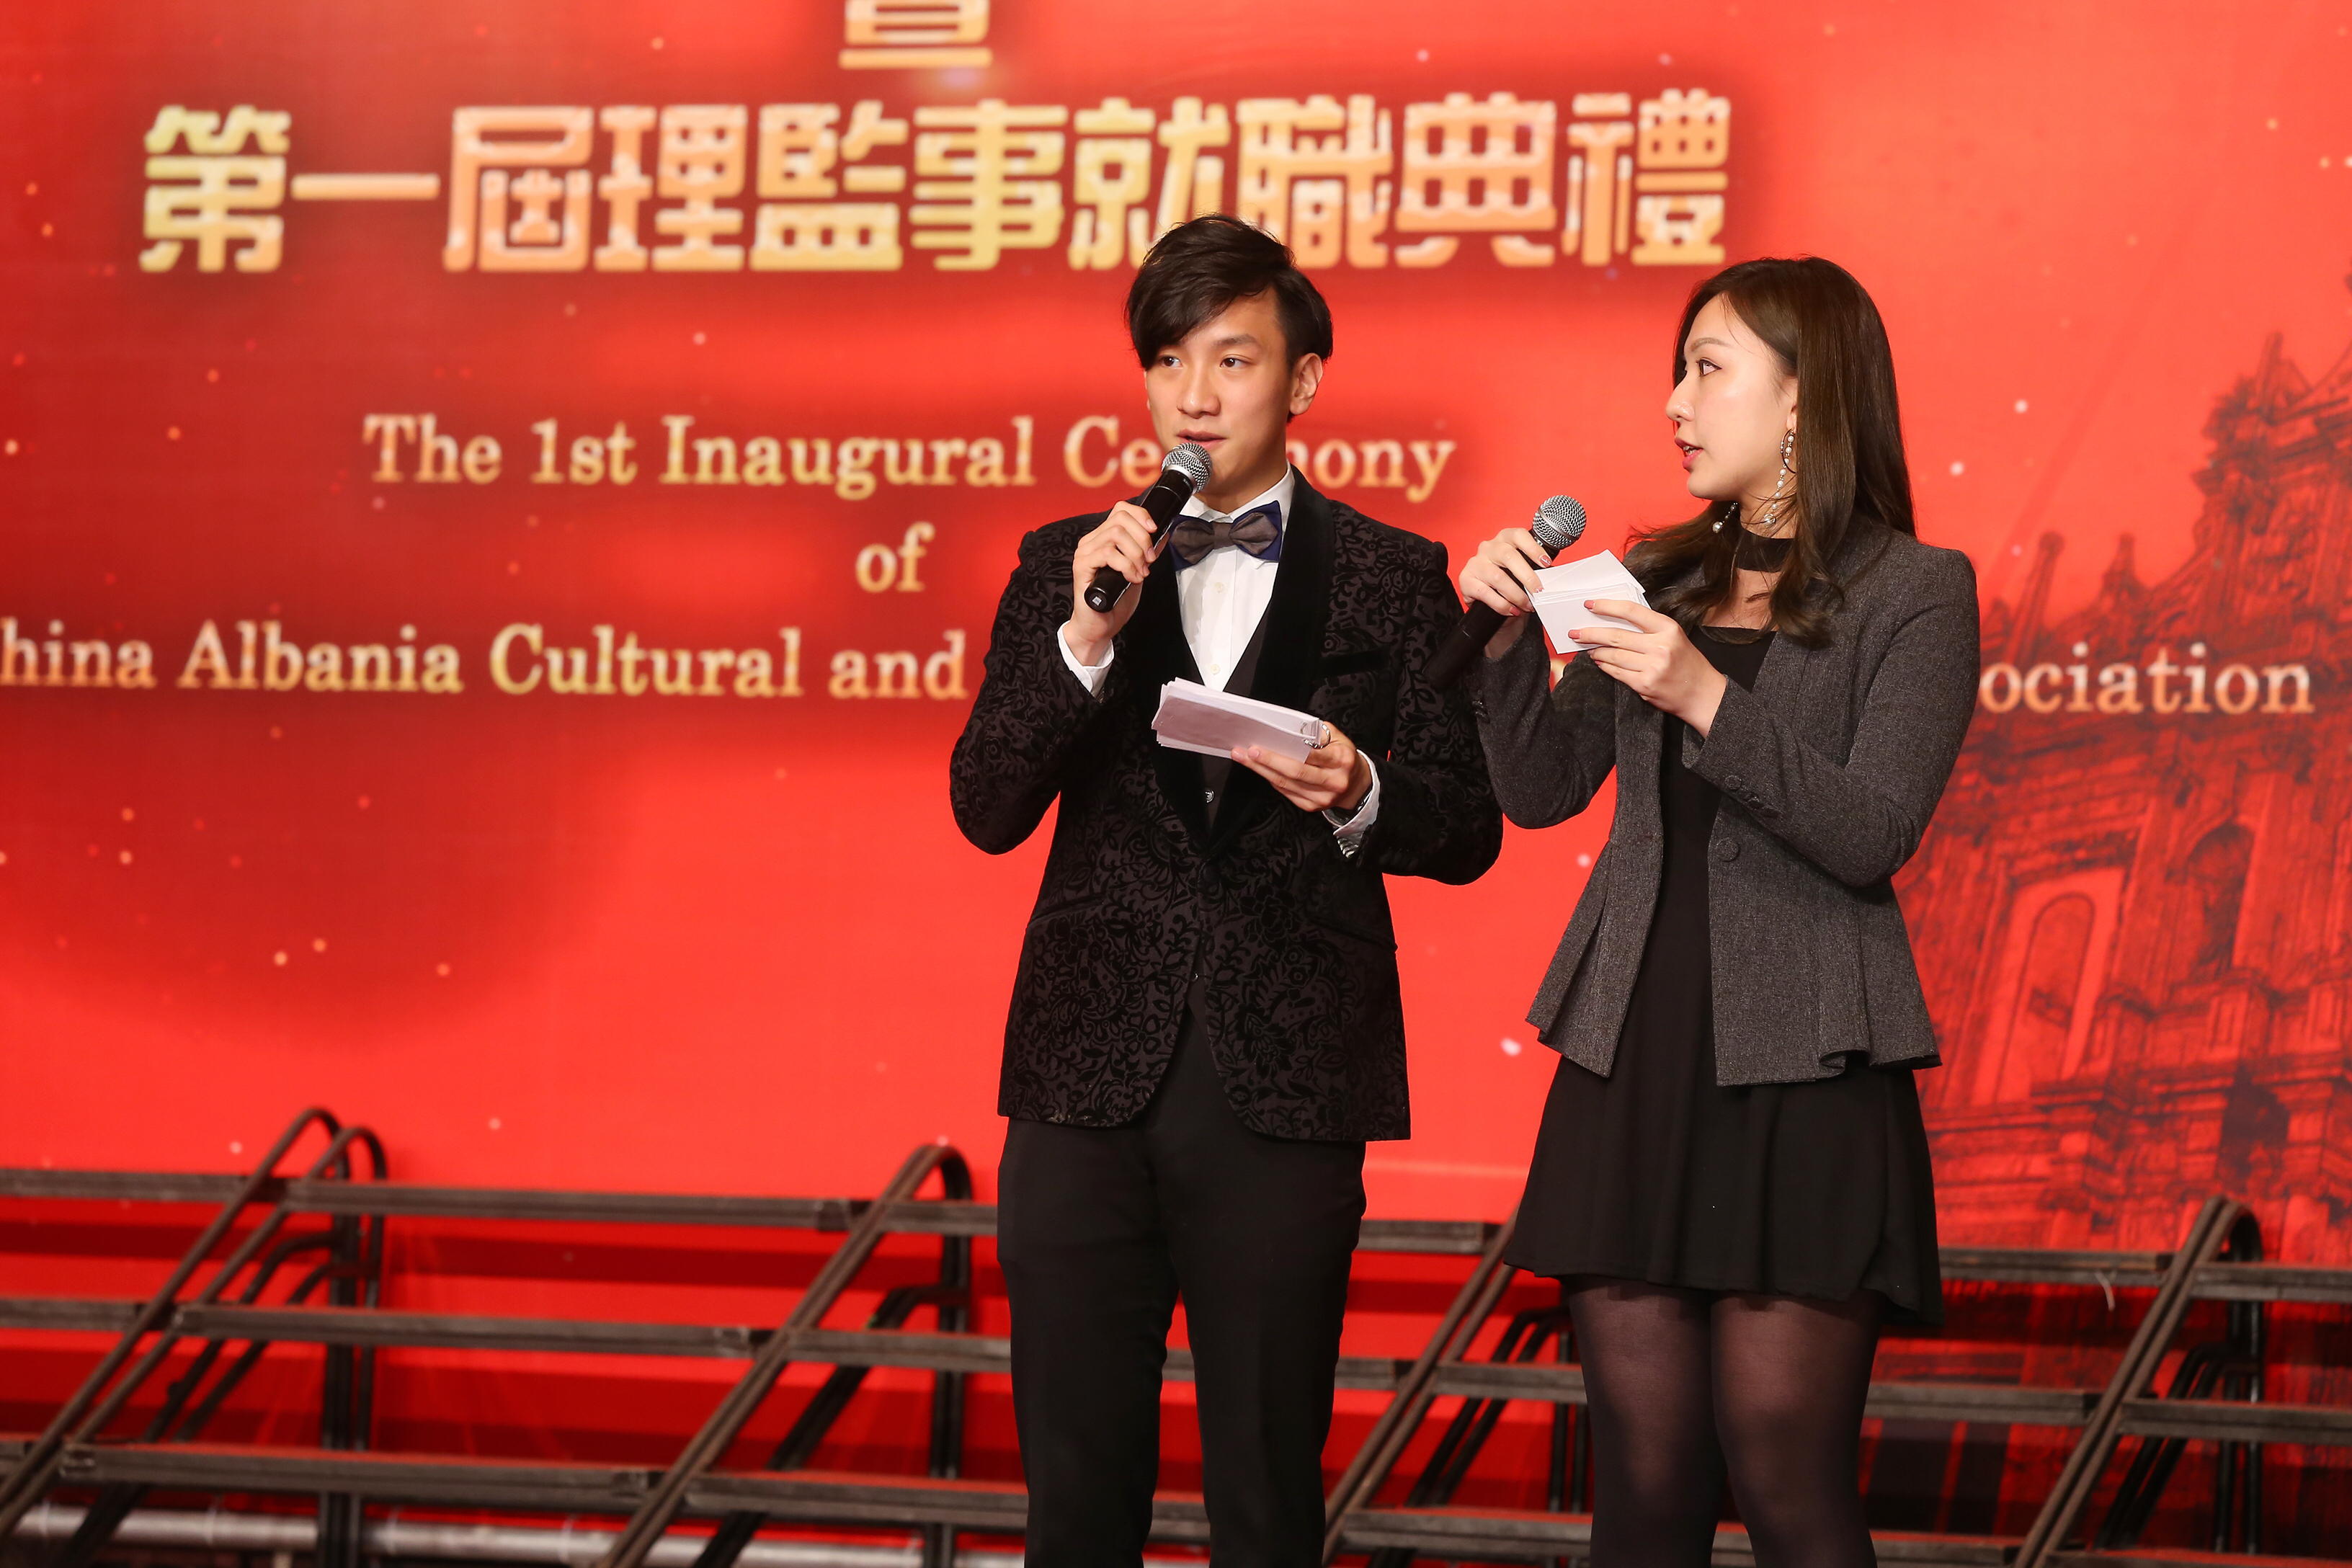 周啓陽 Elvis Chao司儀工作紀錄: 雙語司儀_The Inaugural Ceremony of Macao of China Albania Cultural and Economic Promotion Association